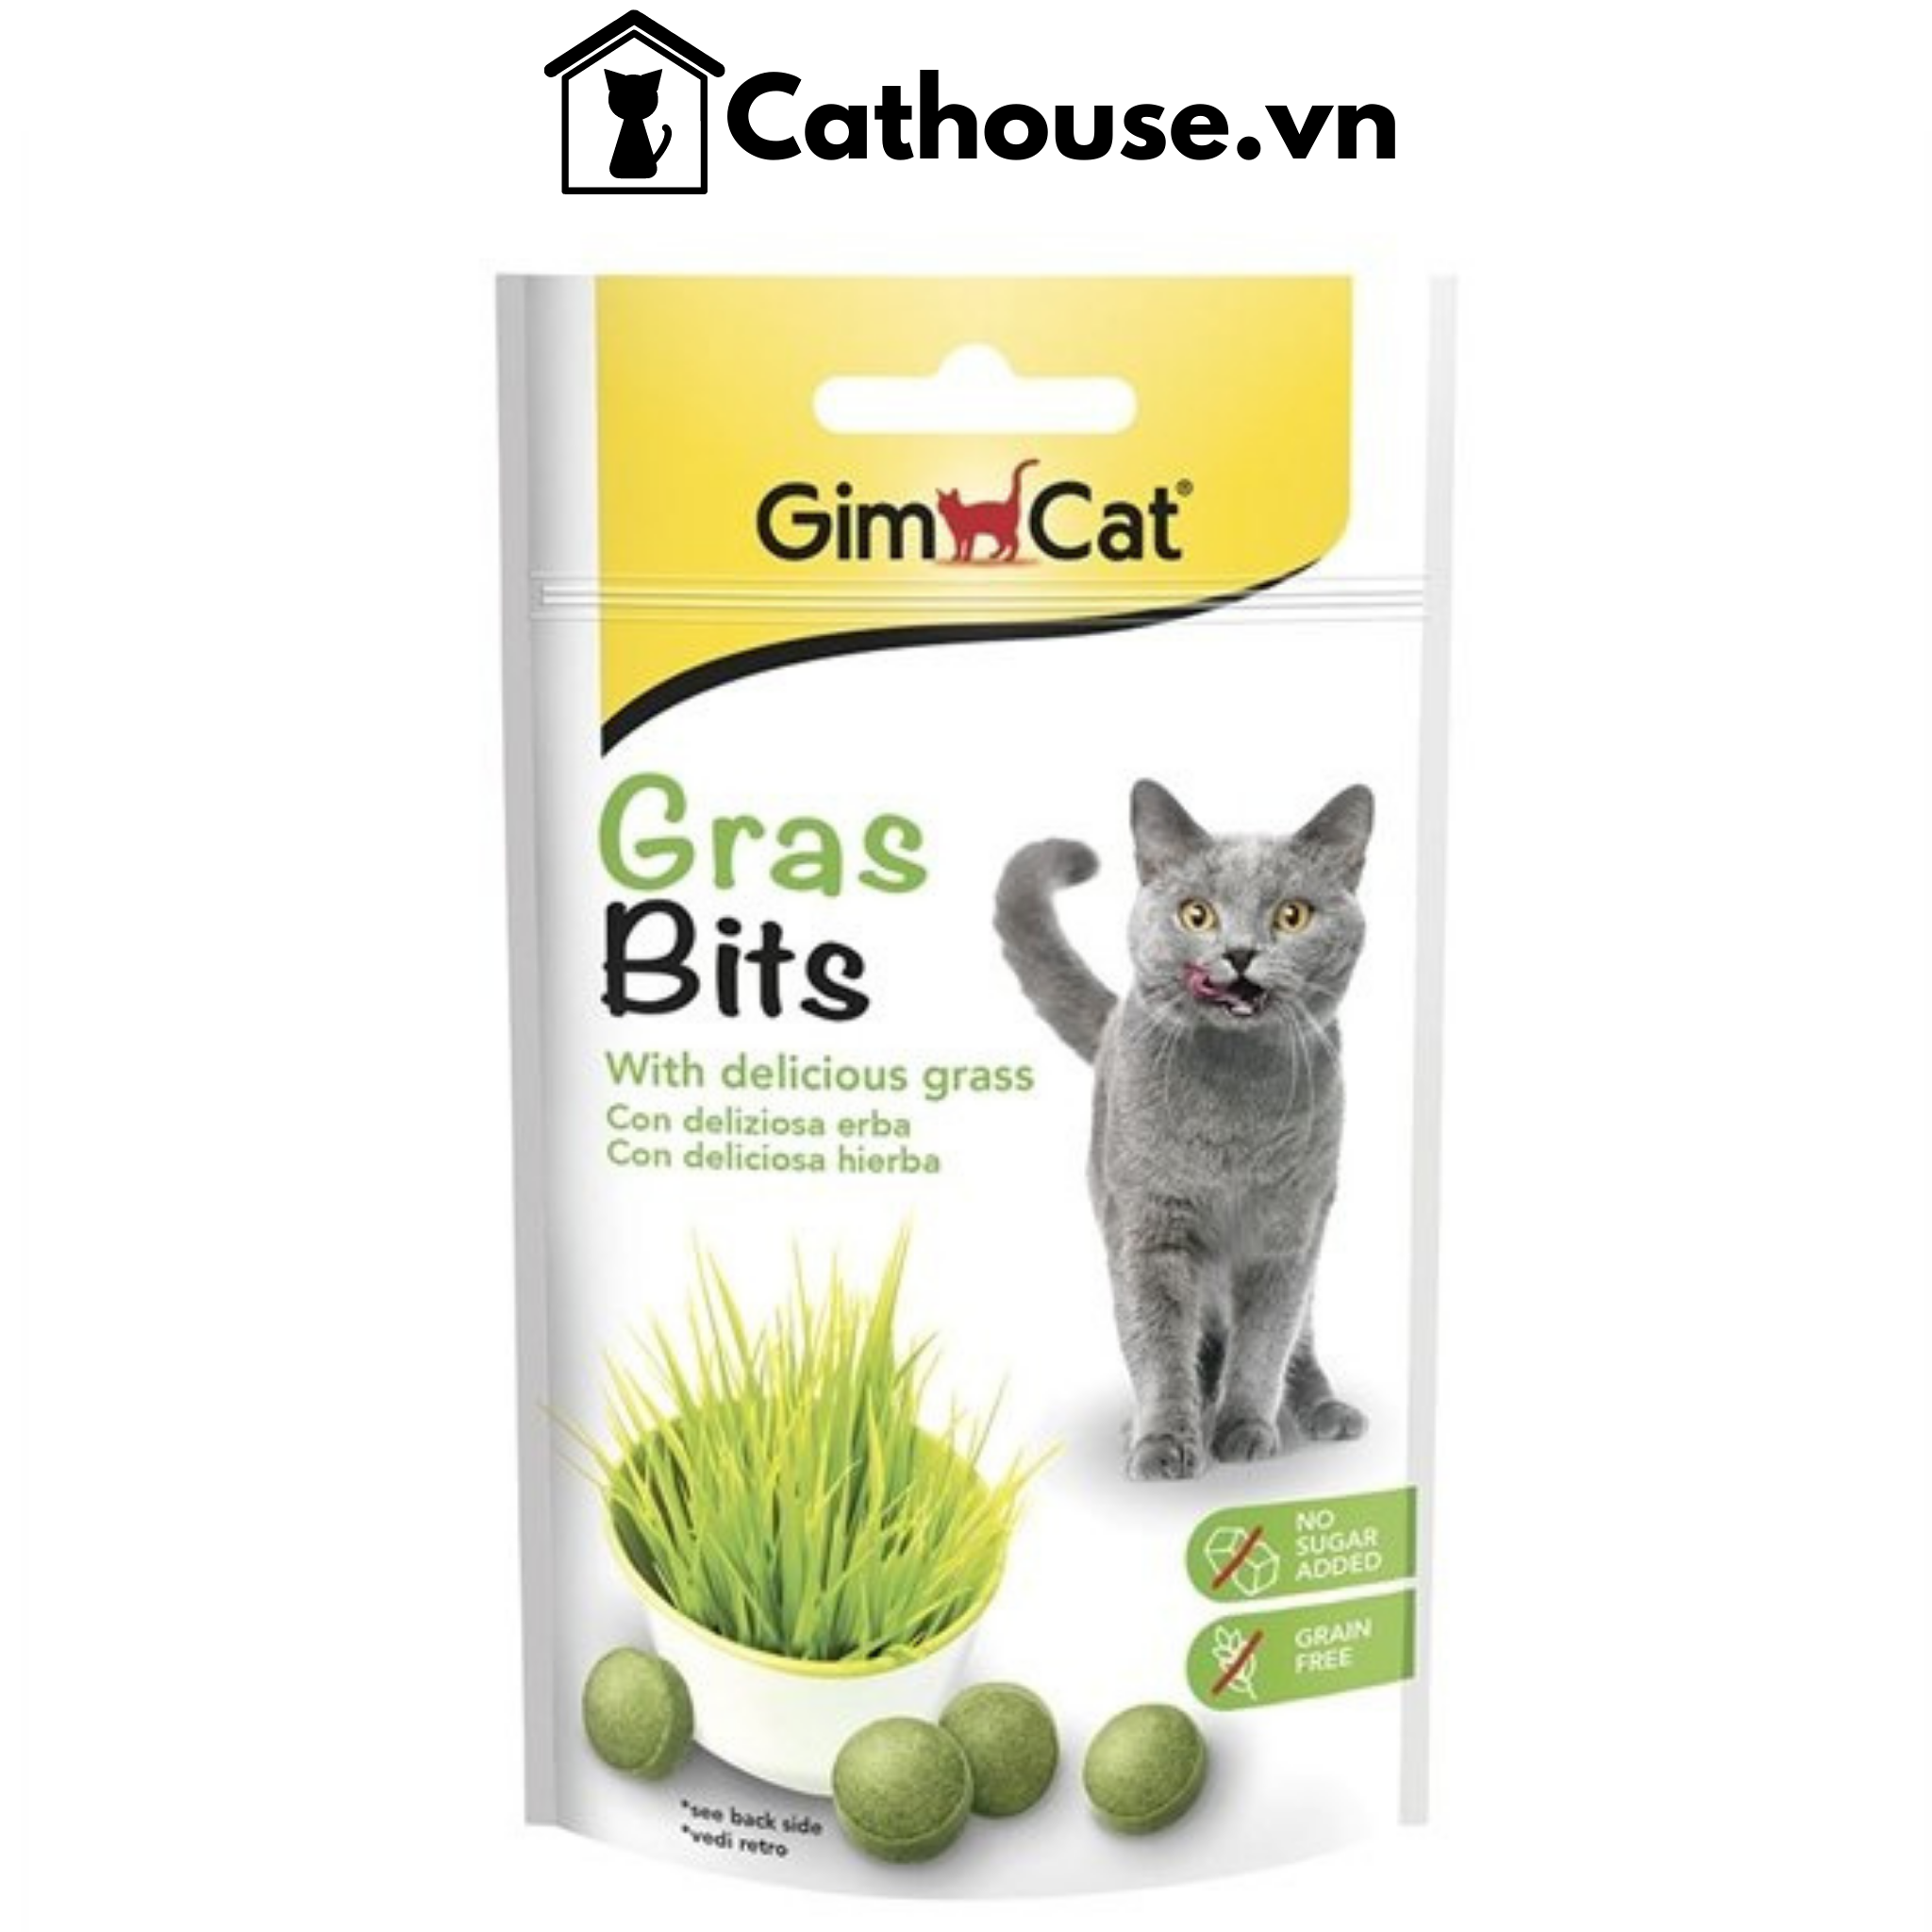  GimCat Gras Bits 50G - Snack Viên Bánh Thưởng Vị Cỏ Mèo 